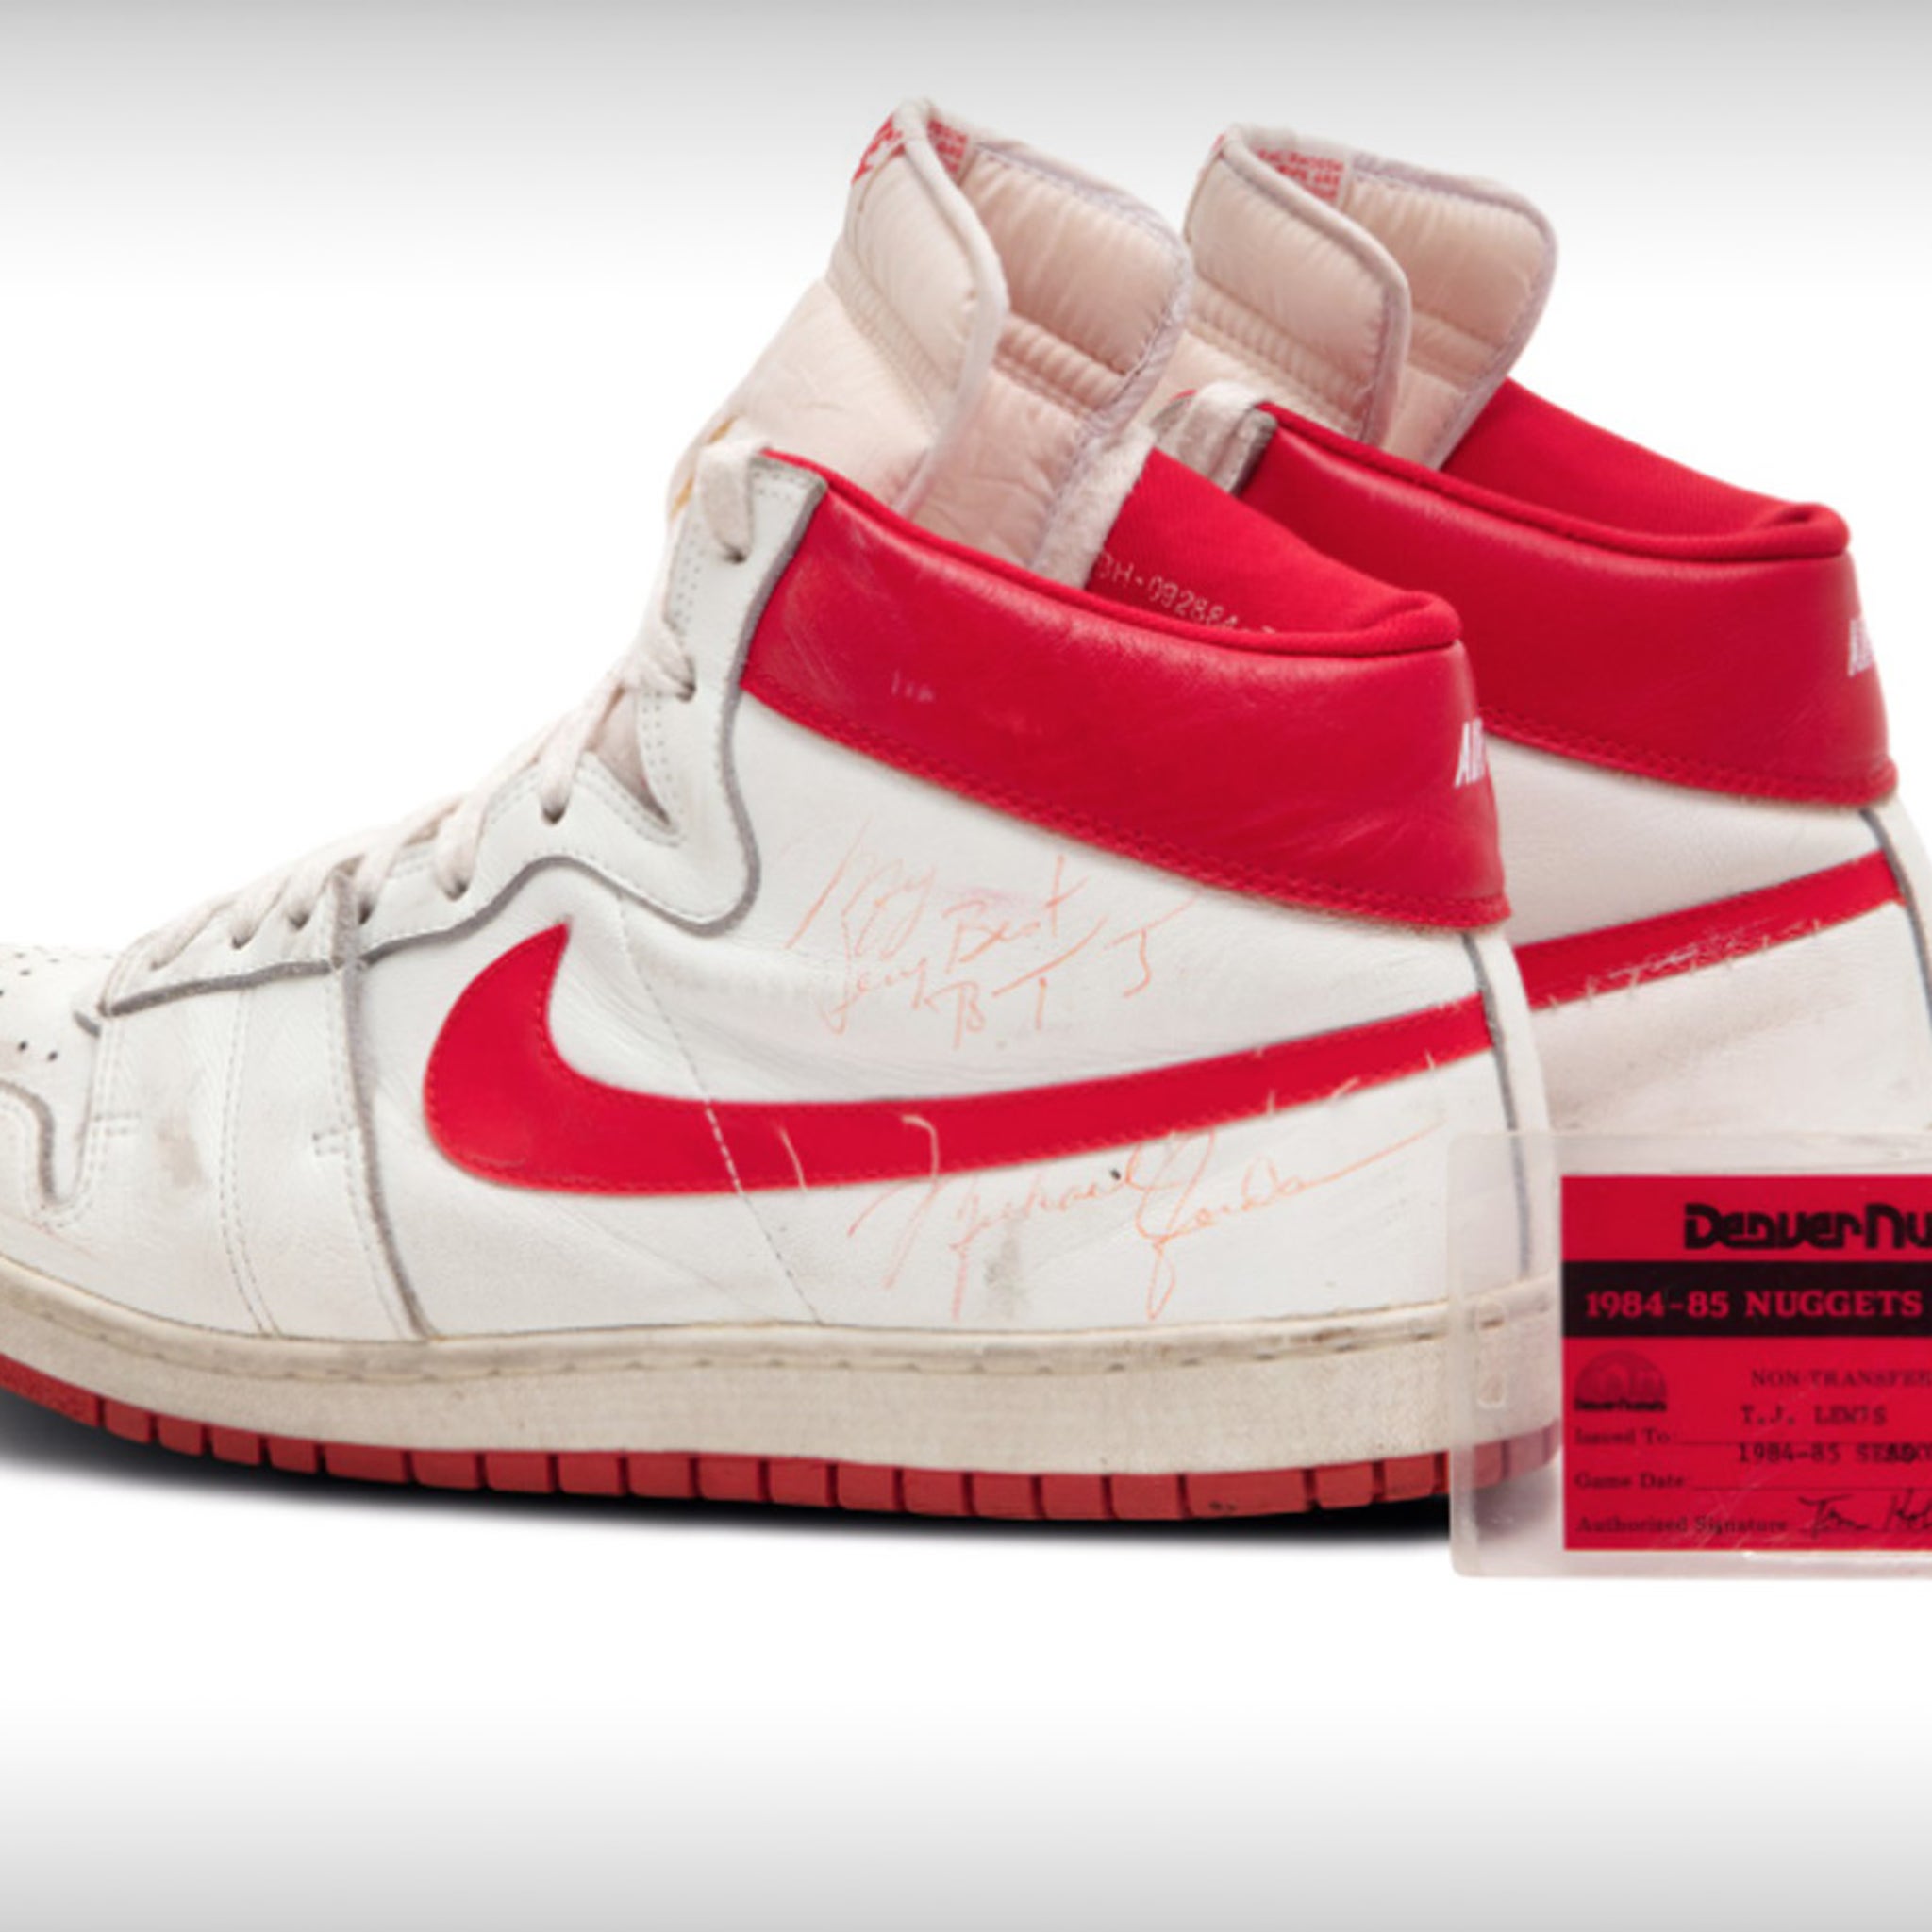 Michael Jordan's first-ever Air Jordan sneakers sell for $560,000